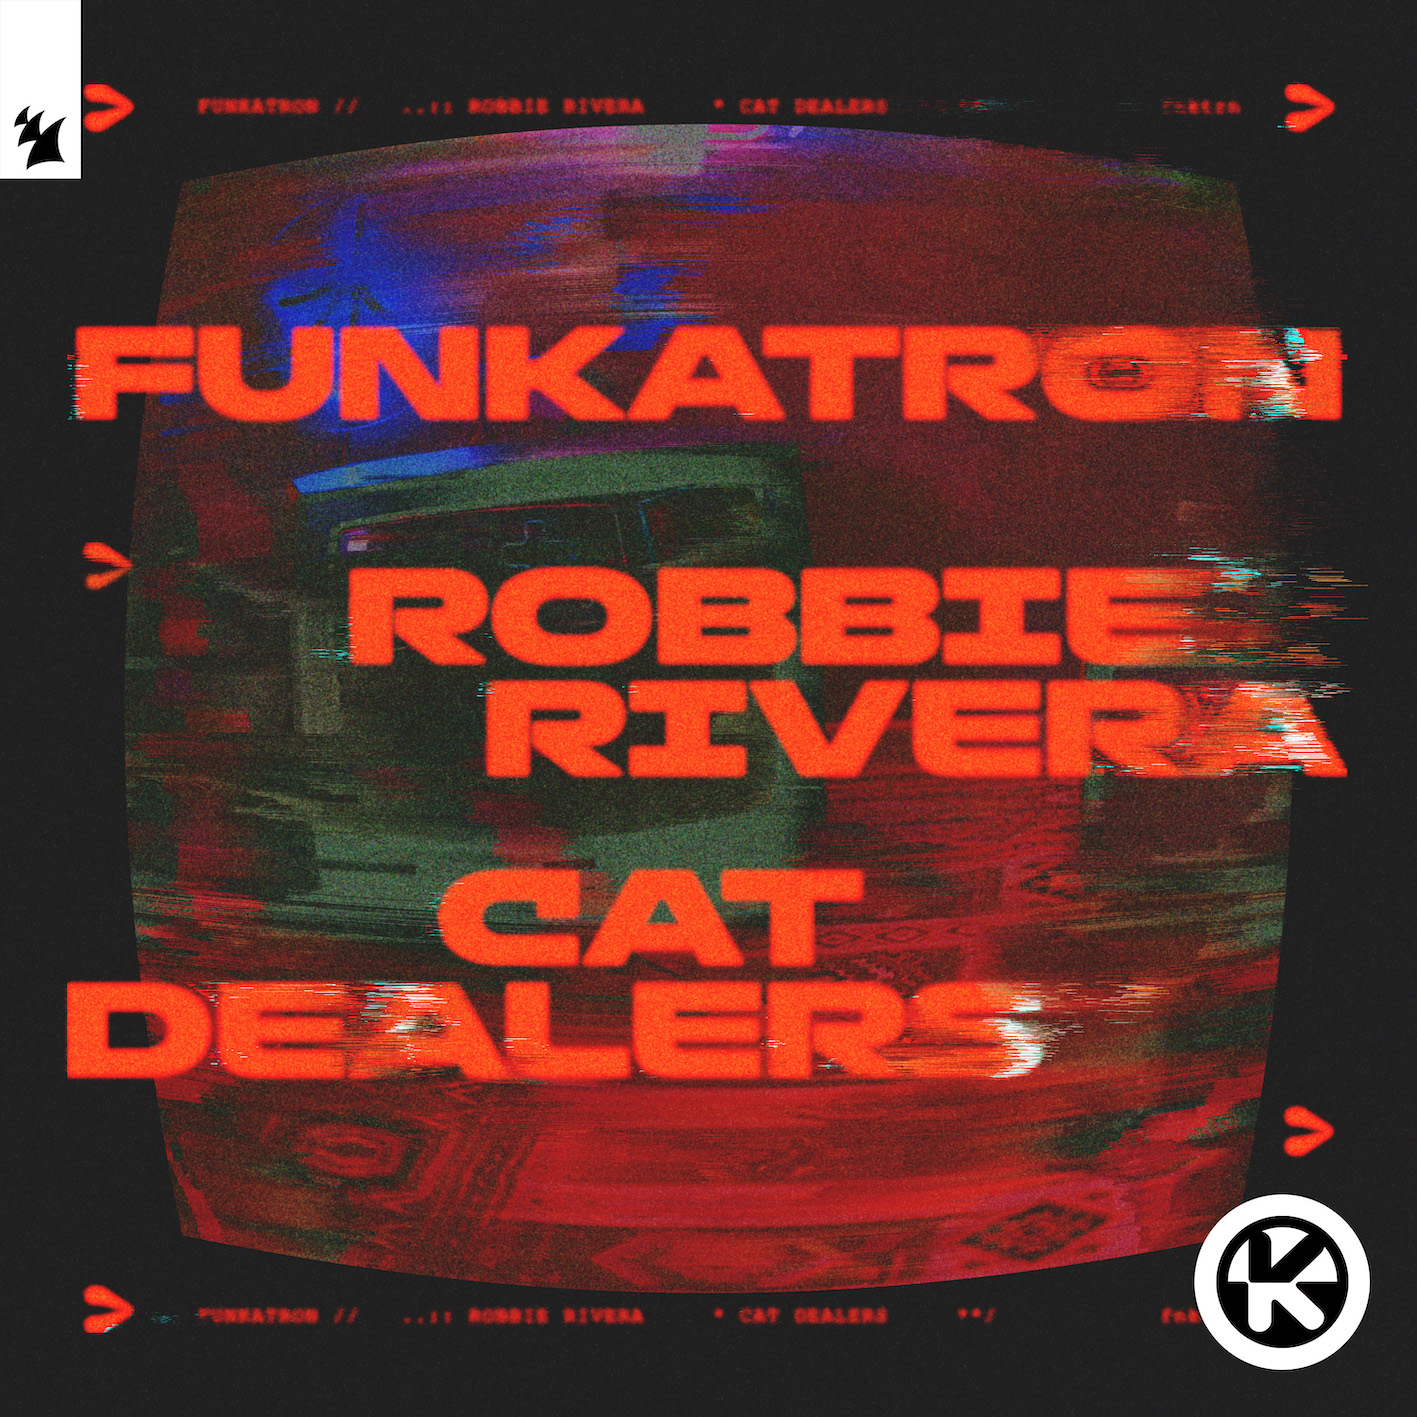 Star-DJ Duo Cat Dealers liefern moderne Neuinterpretation von "Funkatron"